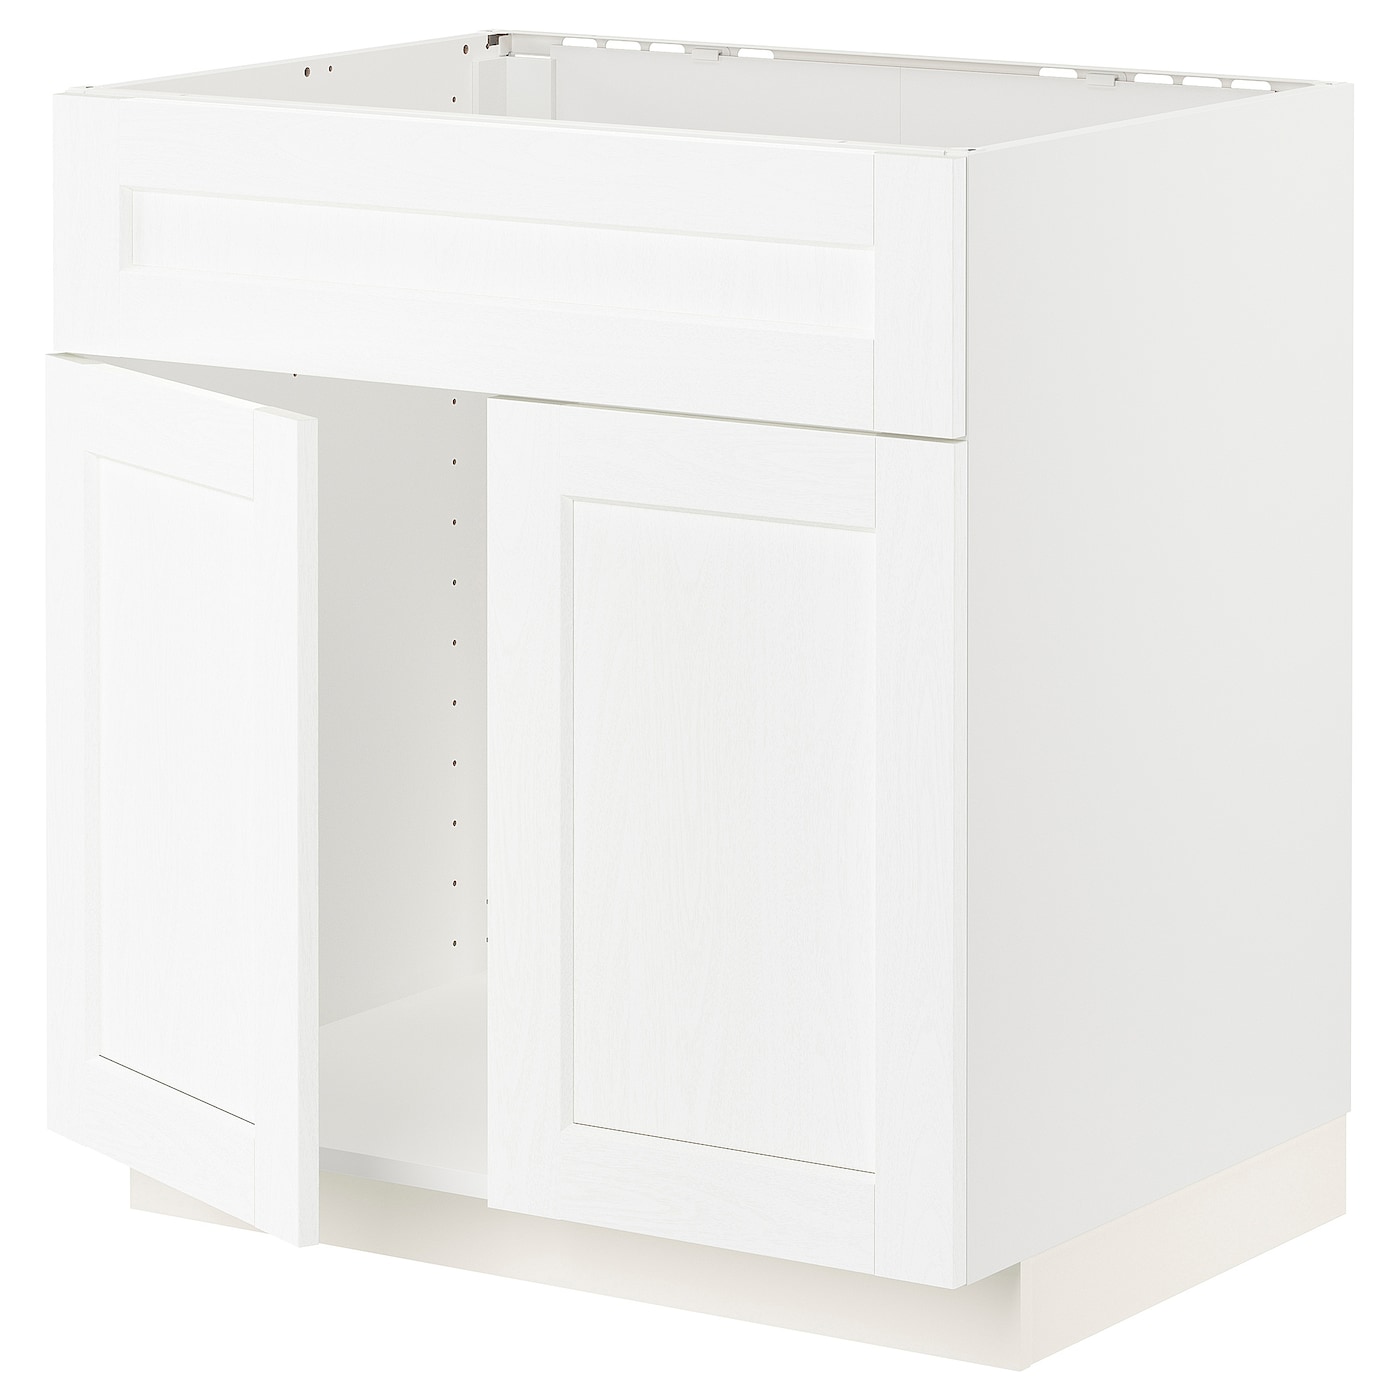 Напольный кухонный шкаф  - IKEA METOD, 88x62x80см, белый, МЕТОД ИКЕА